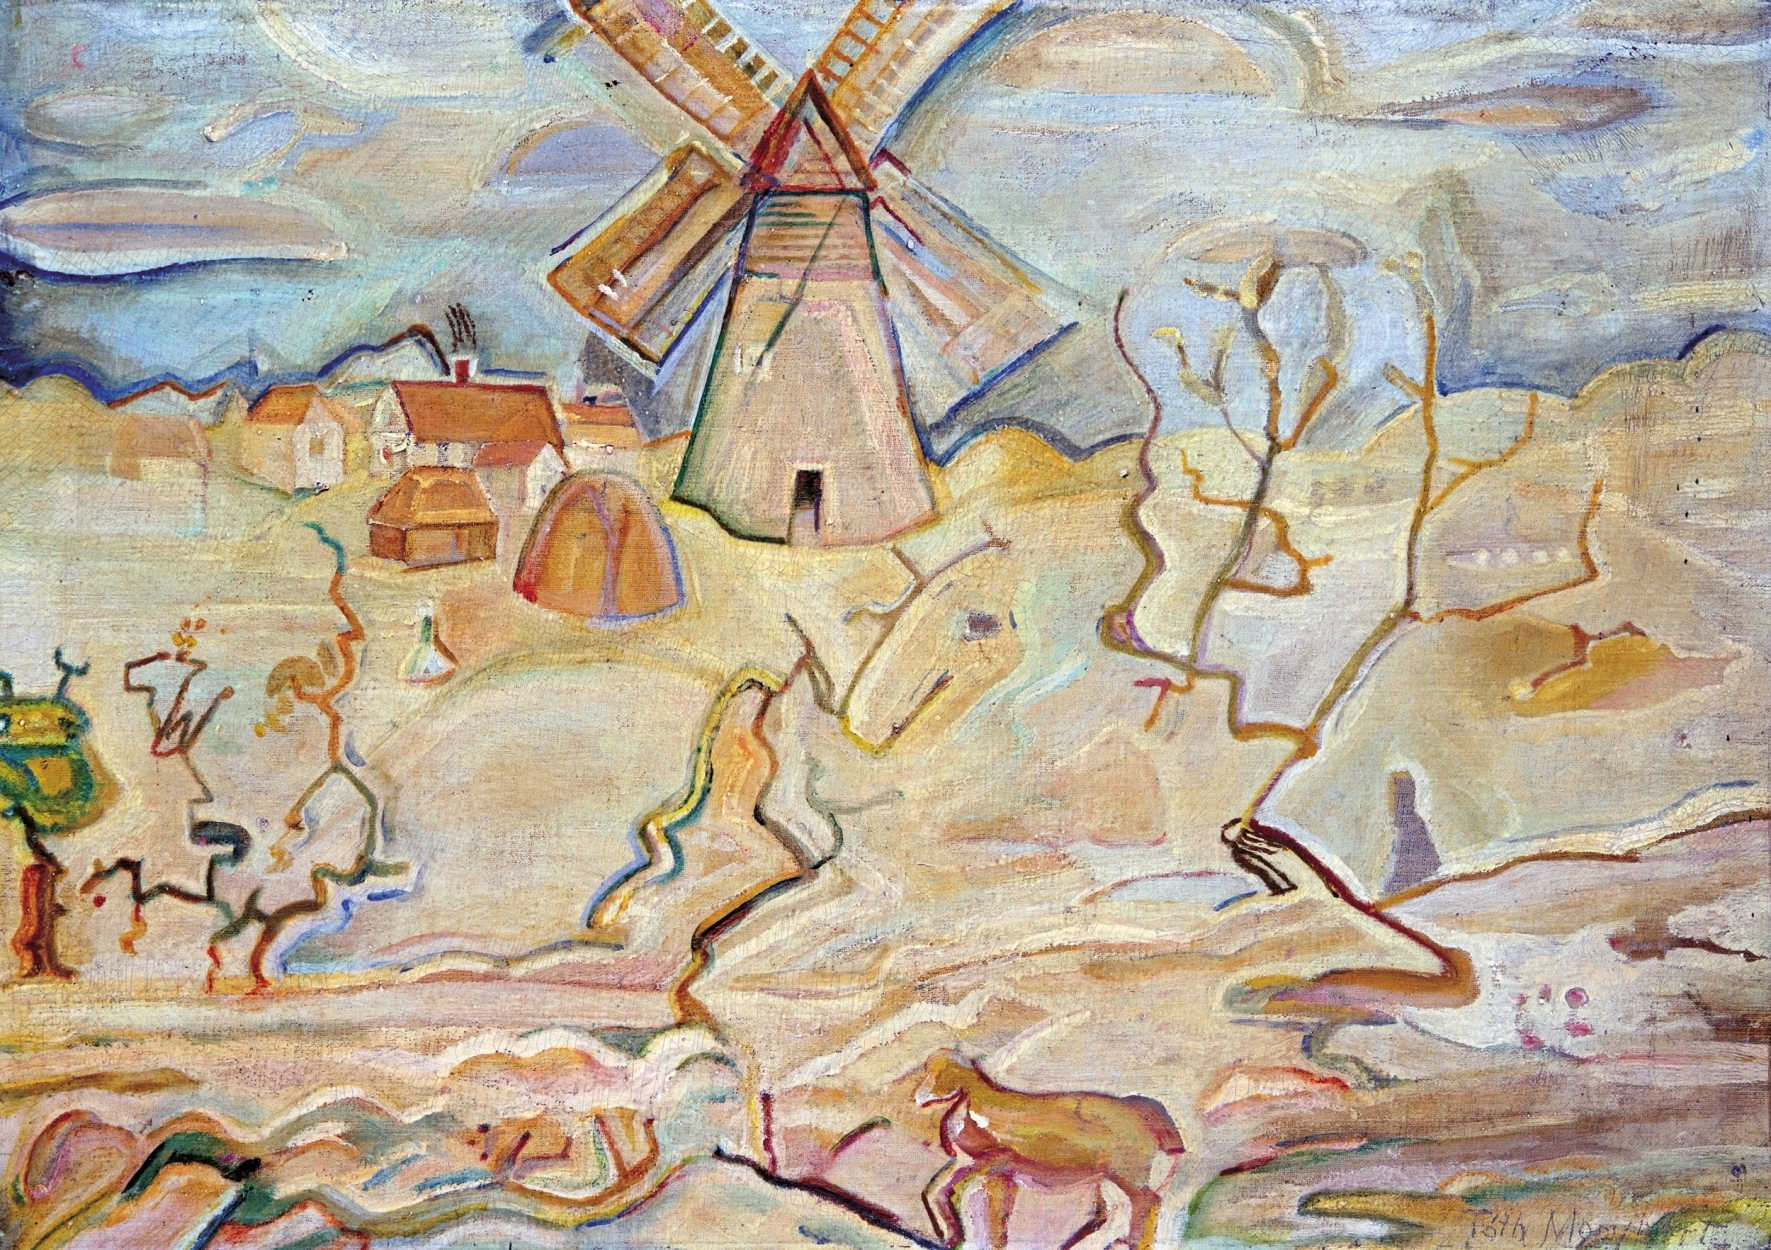 Tóth Menyhért (1904-1980) Landscape with a Mill